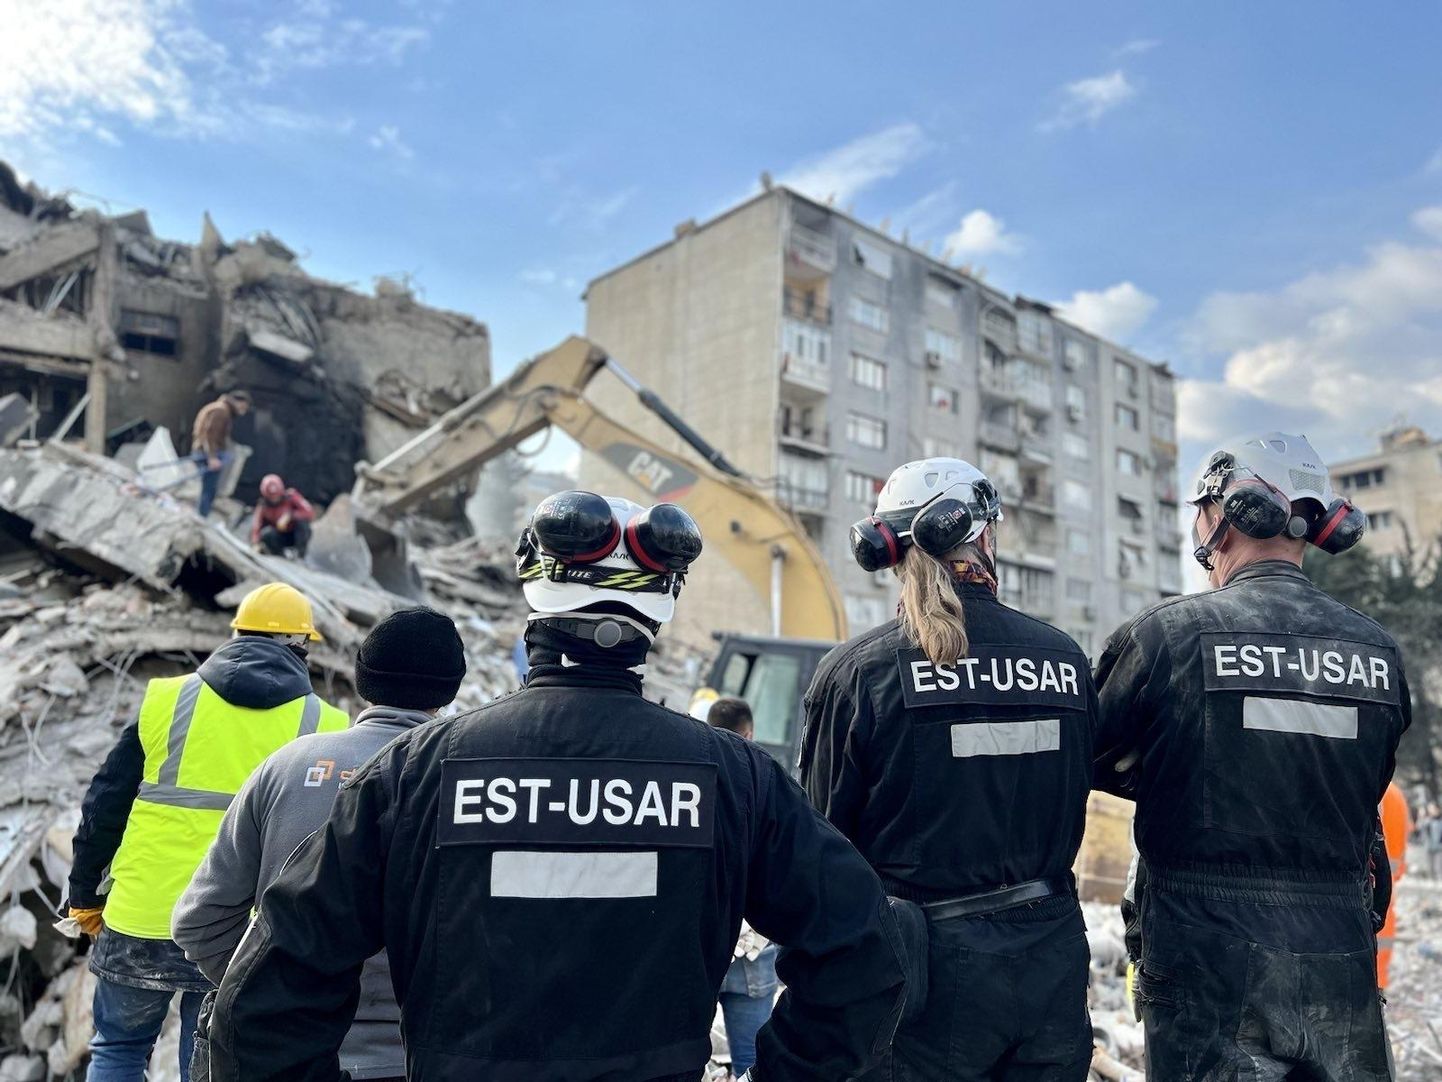 Задача спасательной группы EST-USAR заключалась в поиске живых людей под обломками зданий в Турции.